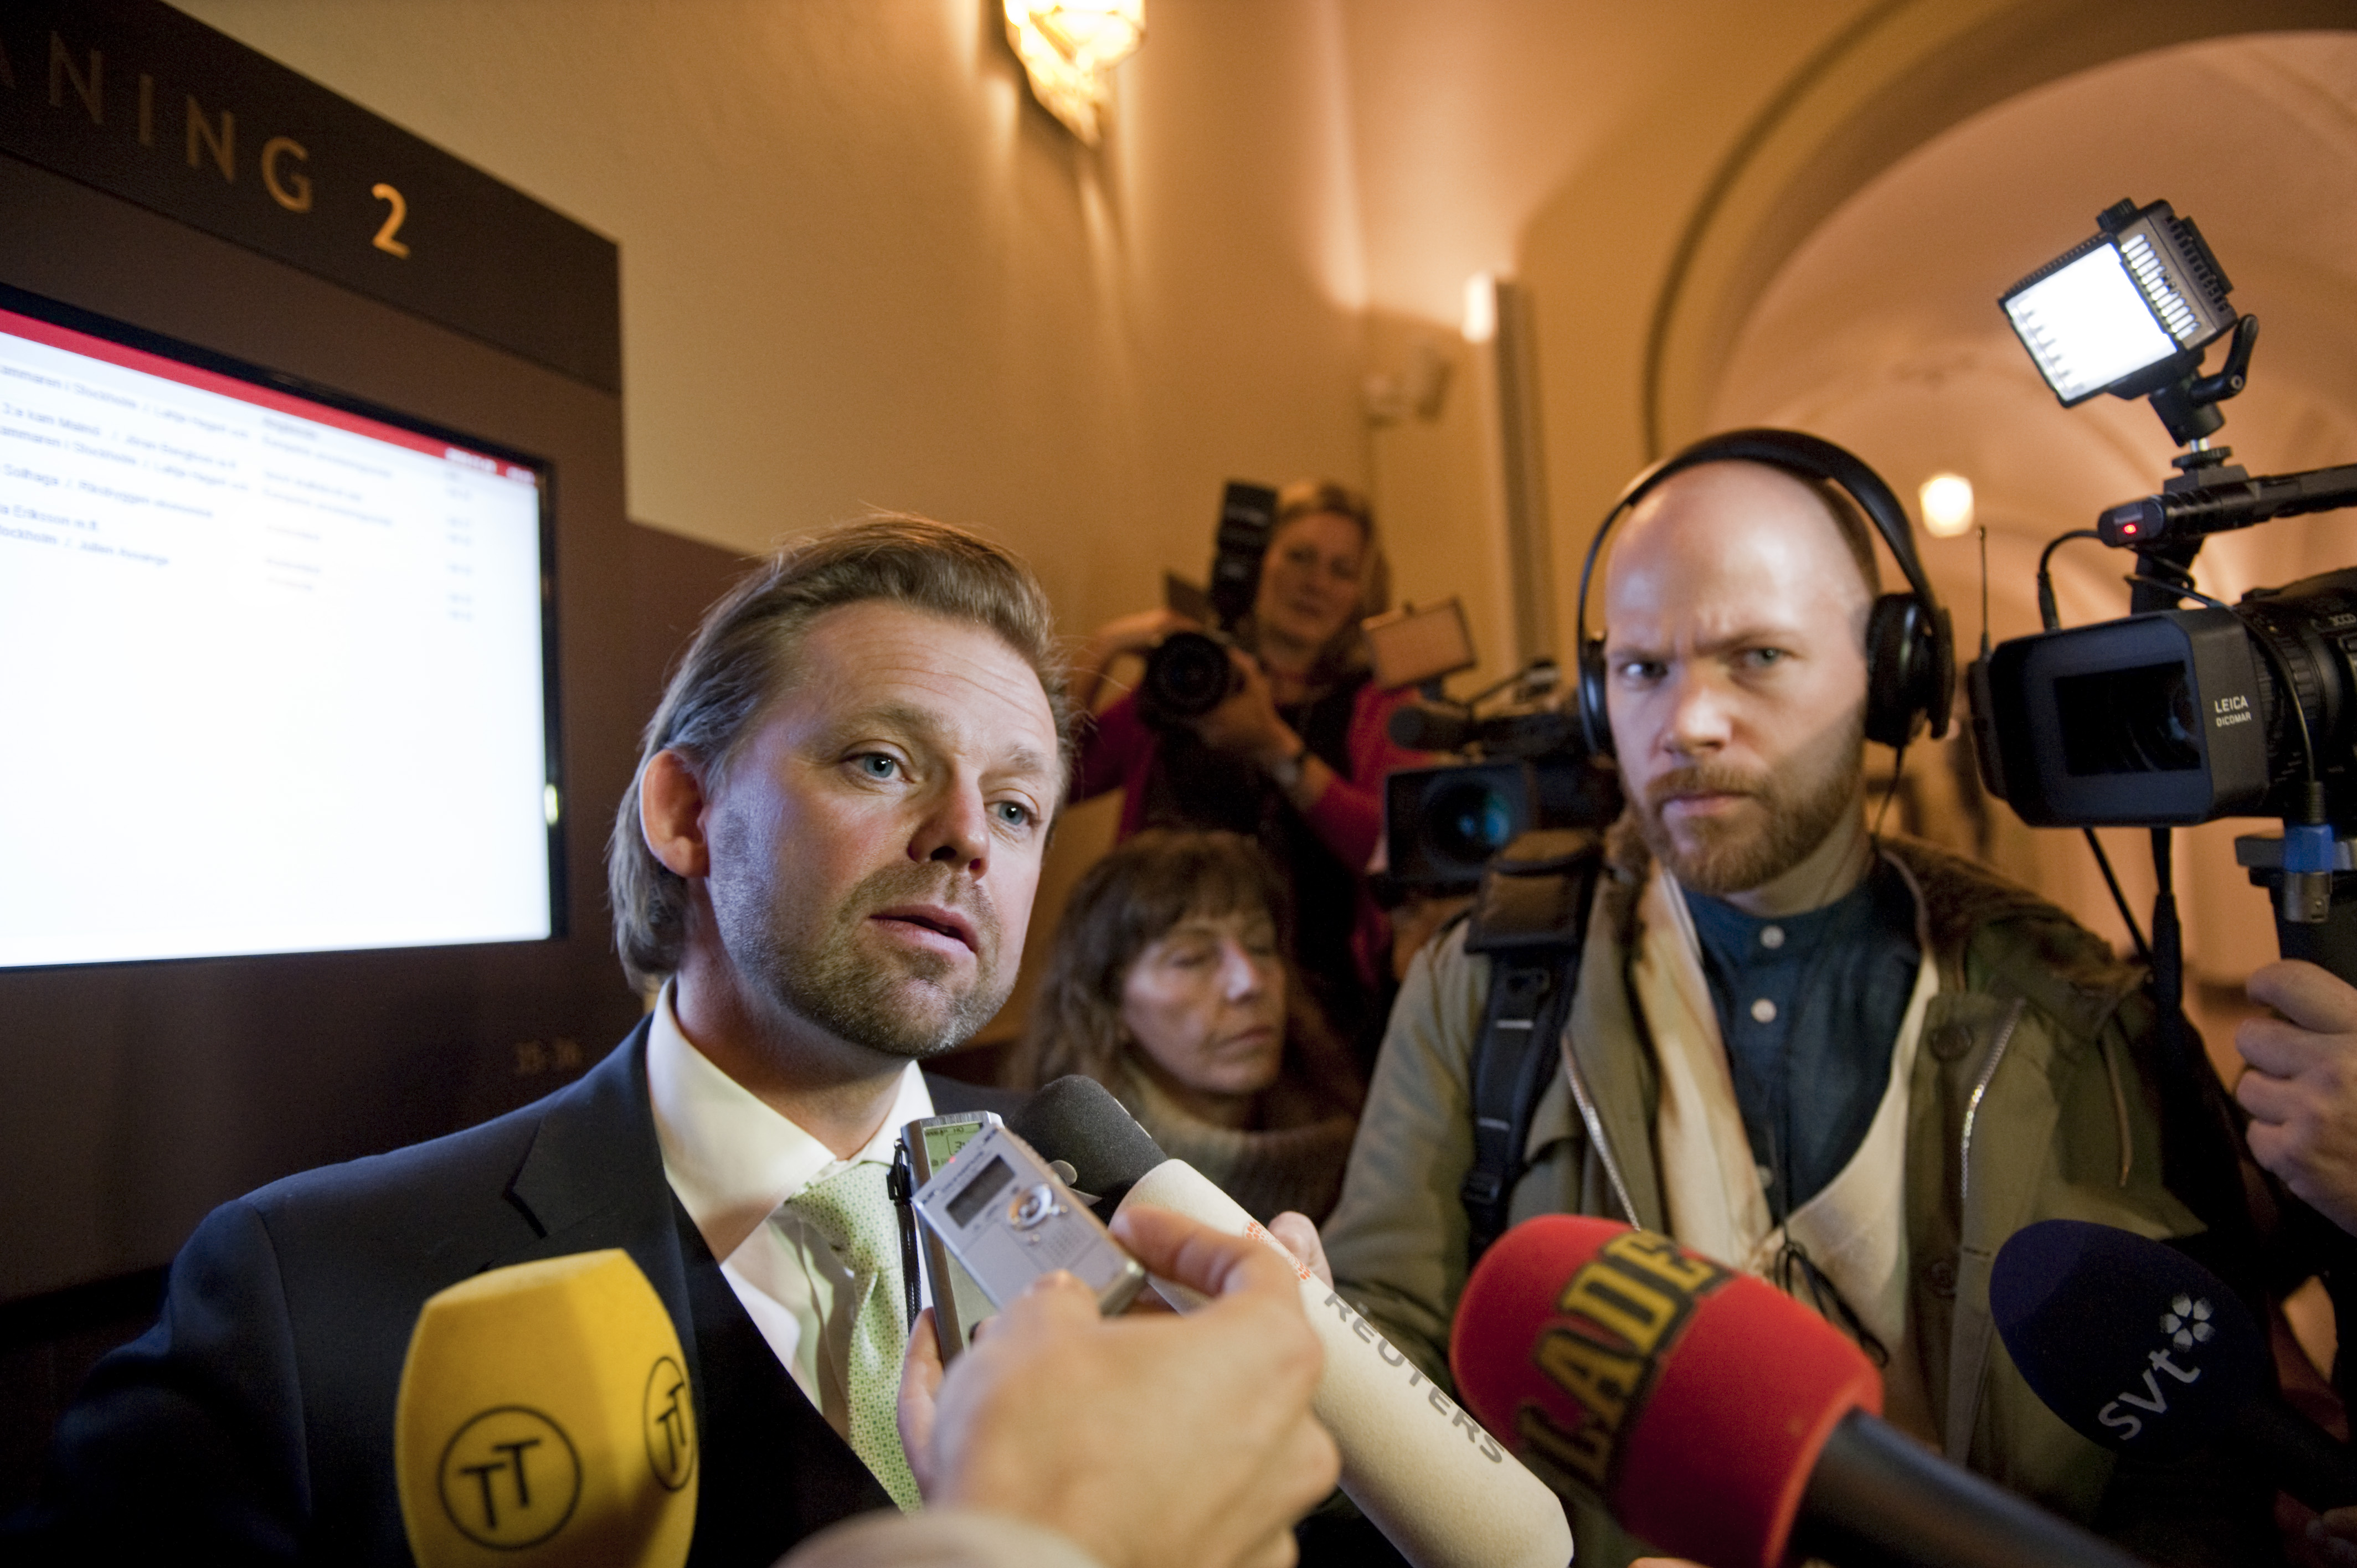 Björn Hurtig är Julian Assanges advokat i Sverige och kollega med Lapidus och Åkermark.